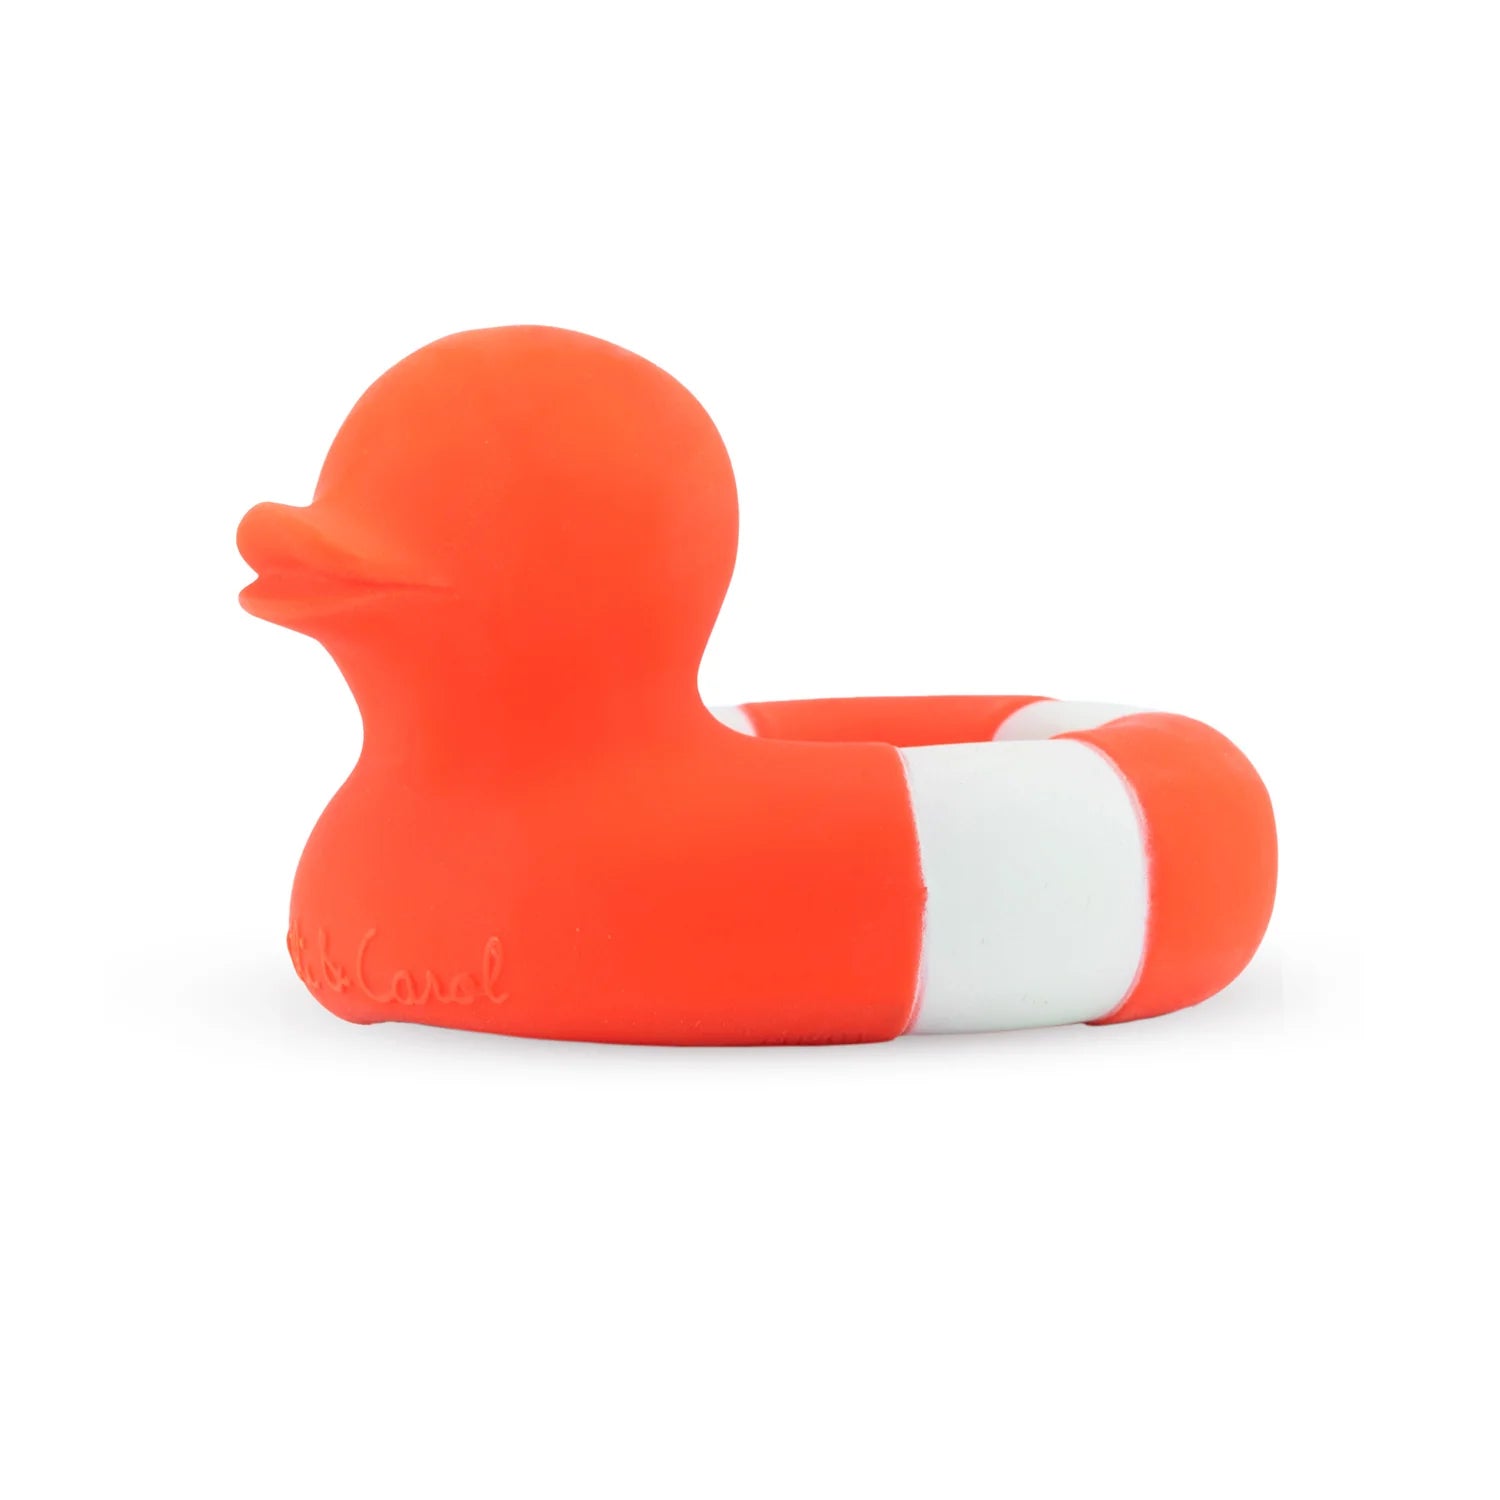 Oli &amp; Carol - flo the floaty duck bath toy - red